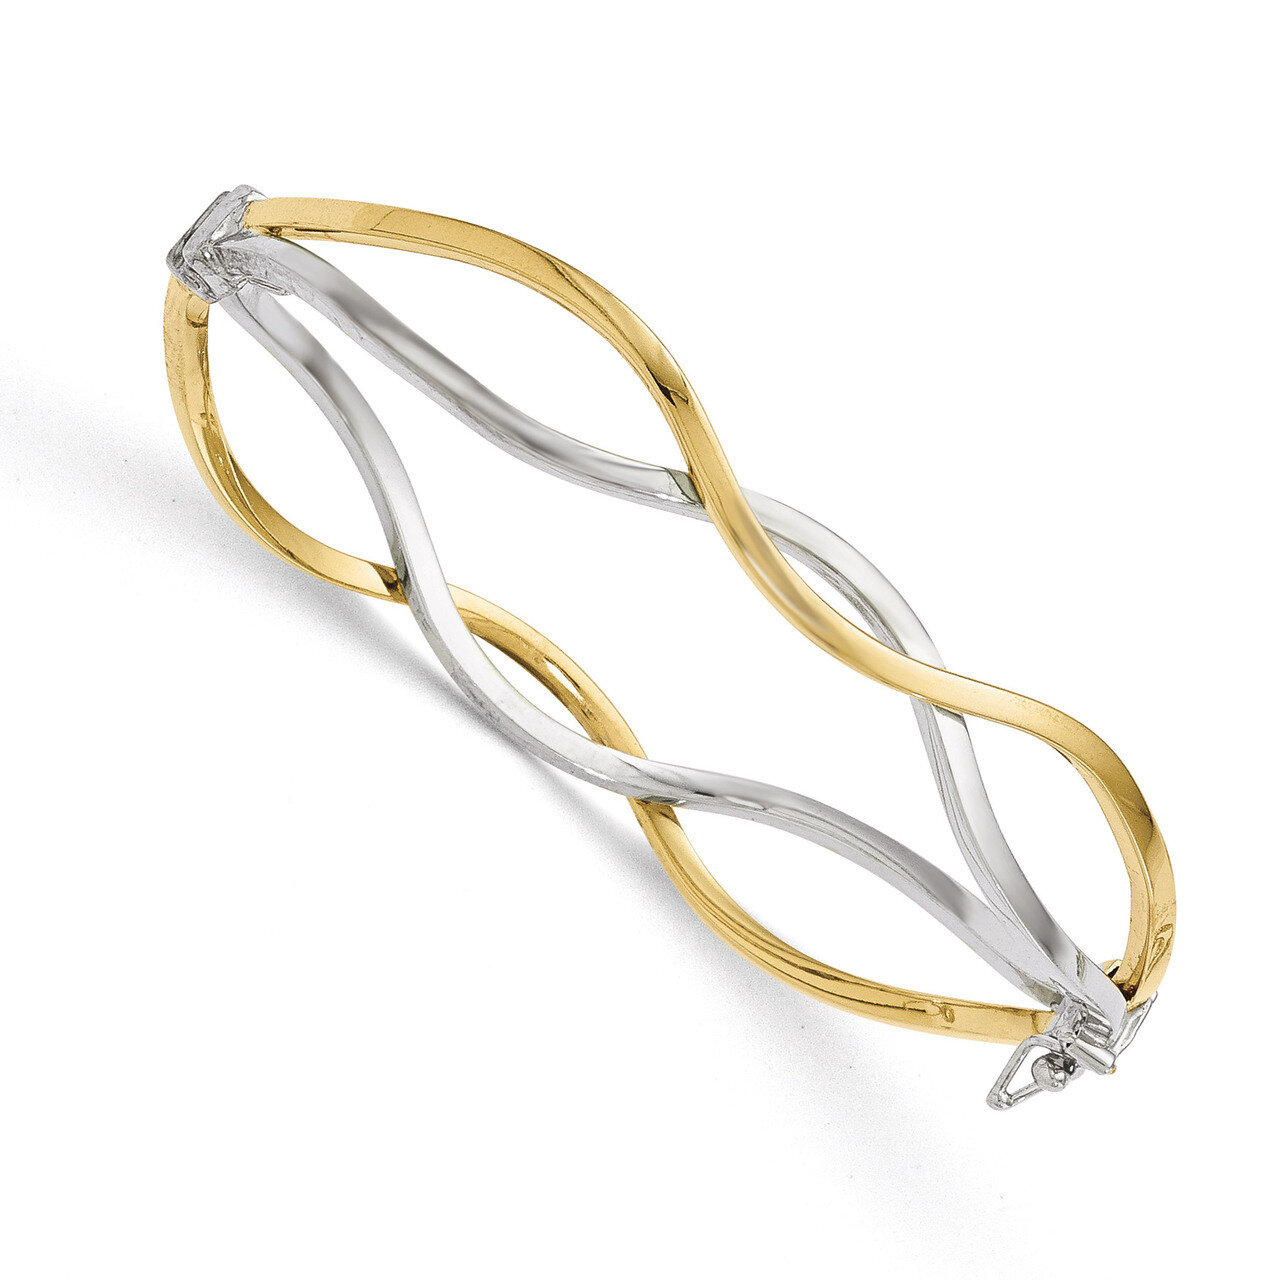 White Rhodium Polished Twisted Bangle Bracelet 7 Inch - 10k Gold HB-10LF516